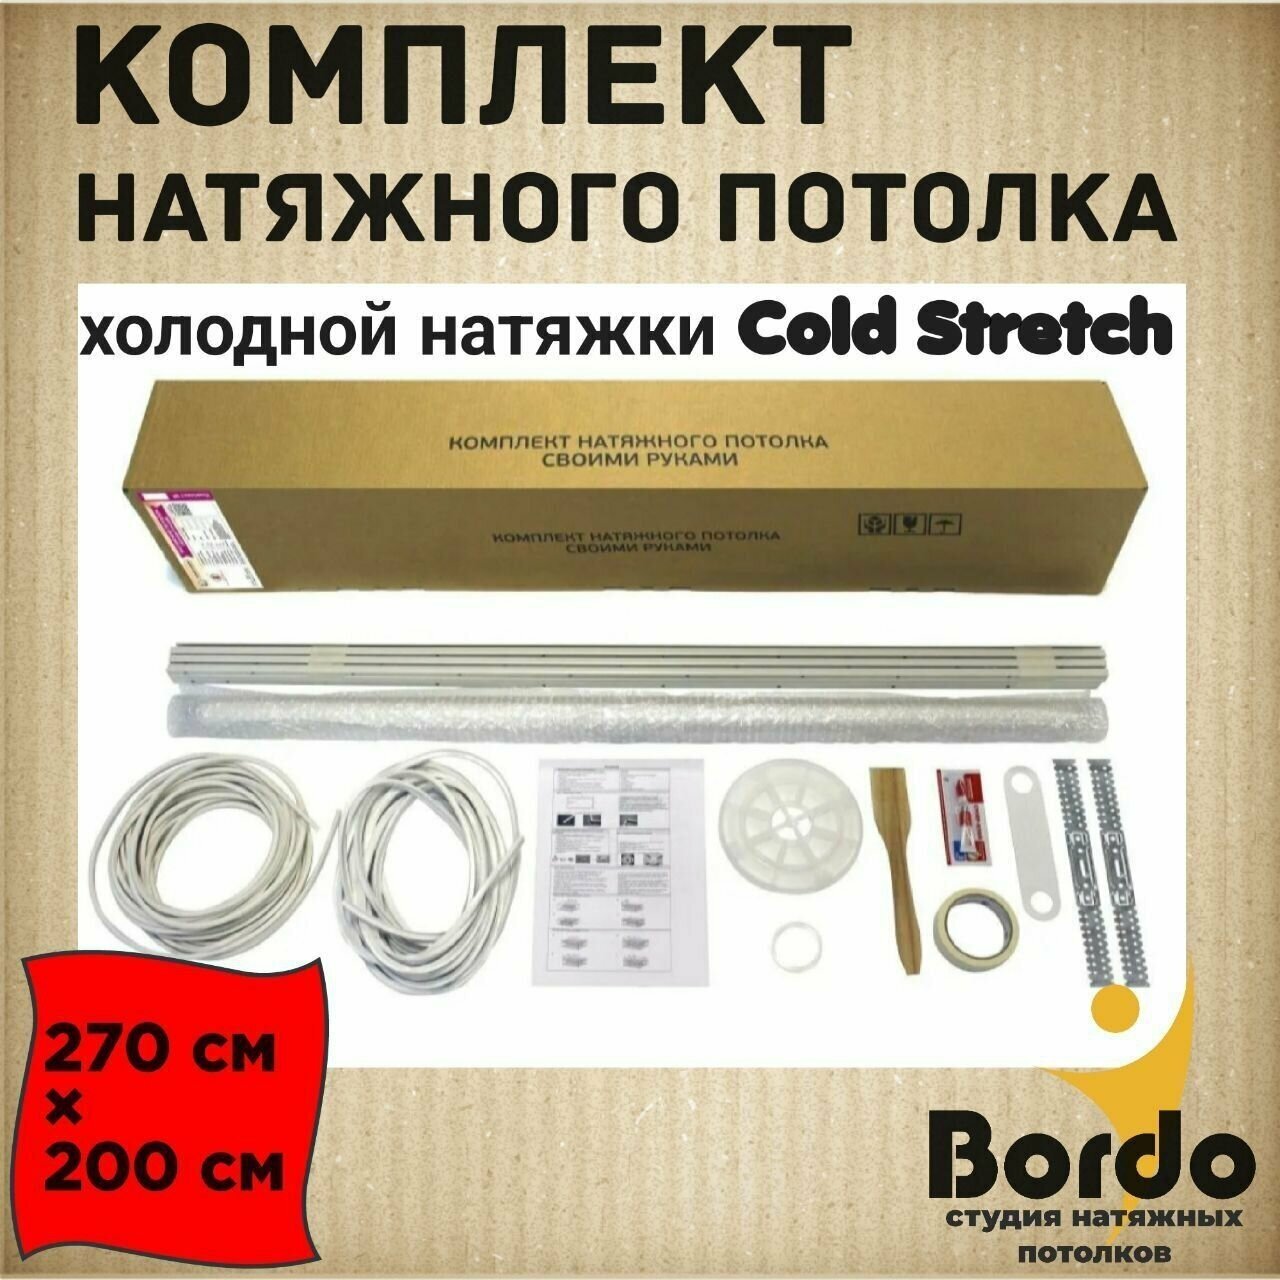 Натяжной потолок, комплект для холодной натяжки своими руками Cold Stretch 270*200 см